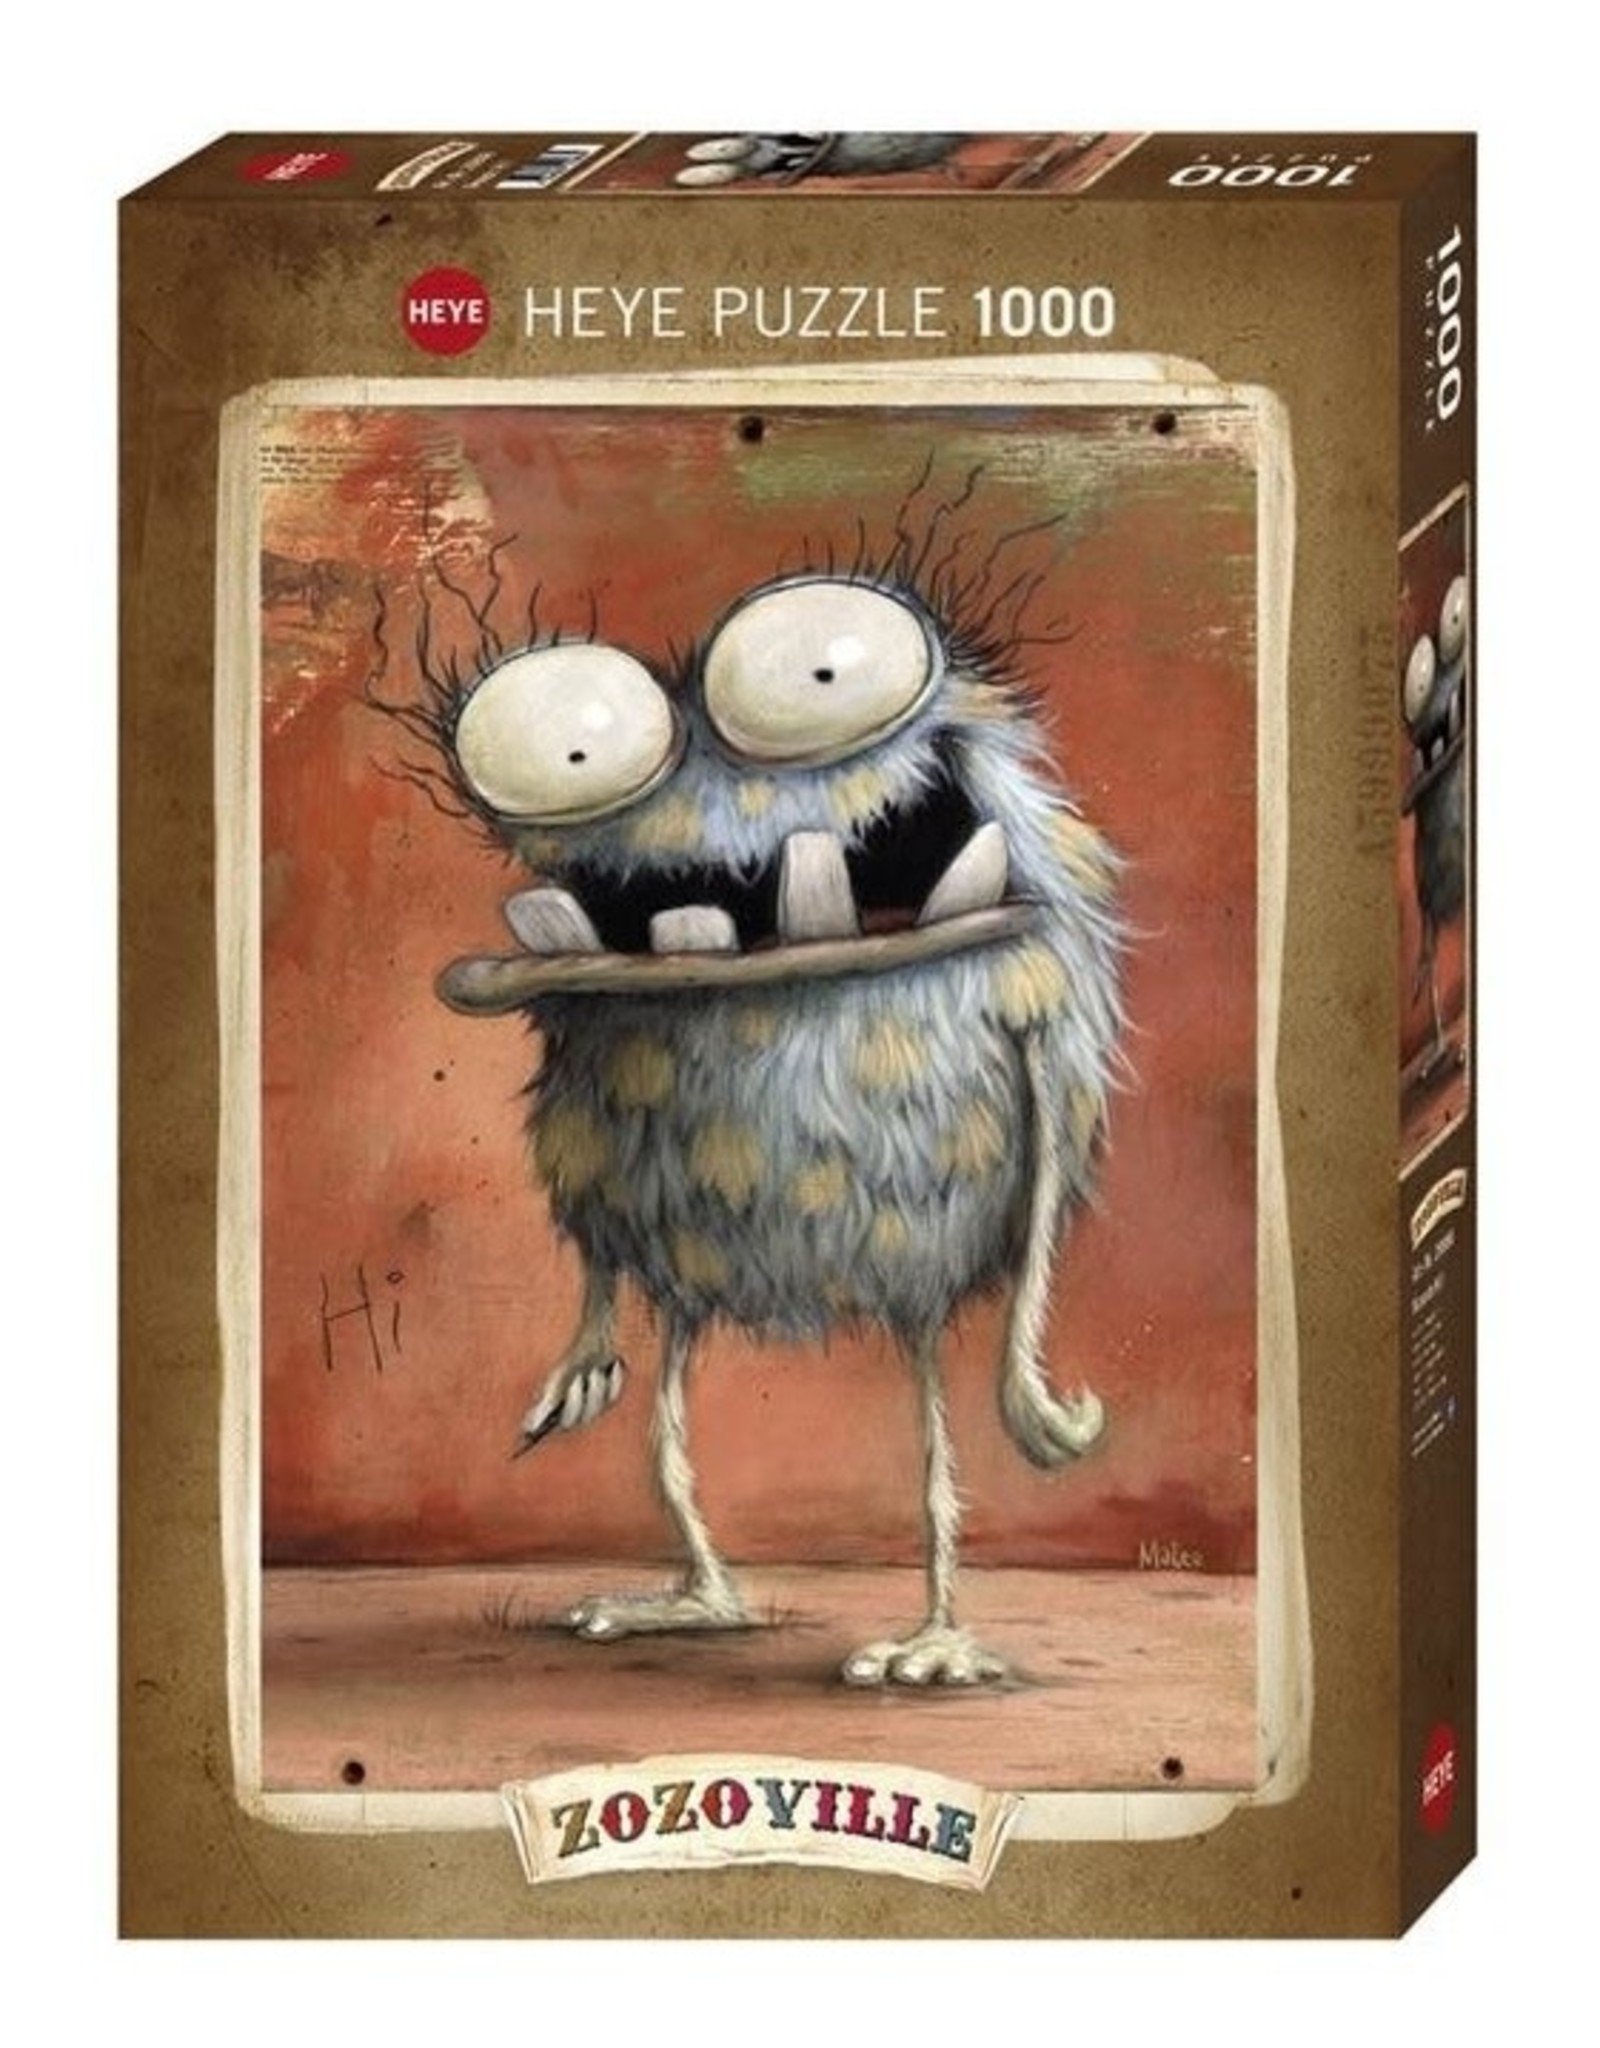 Zozoville Puzzle (1000 piece) - Hi